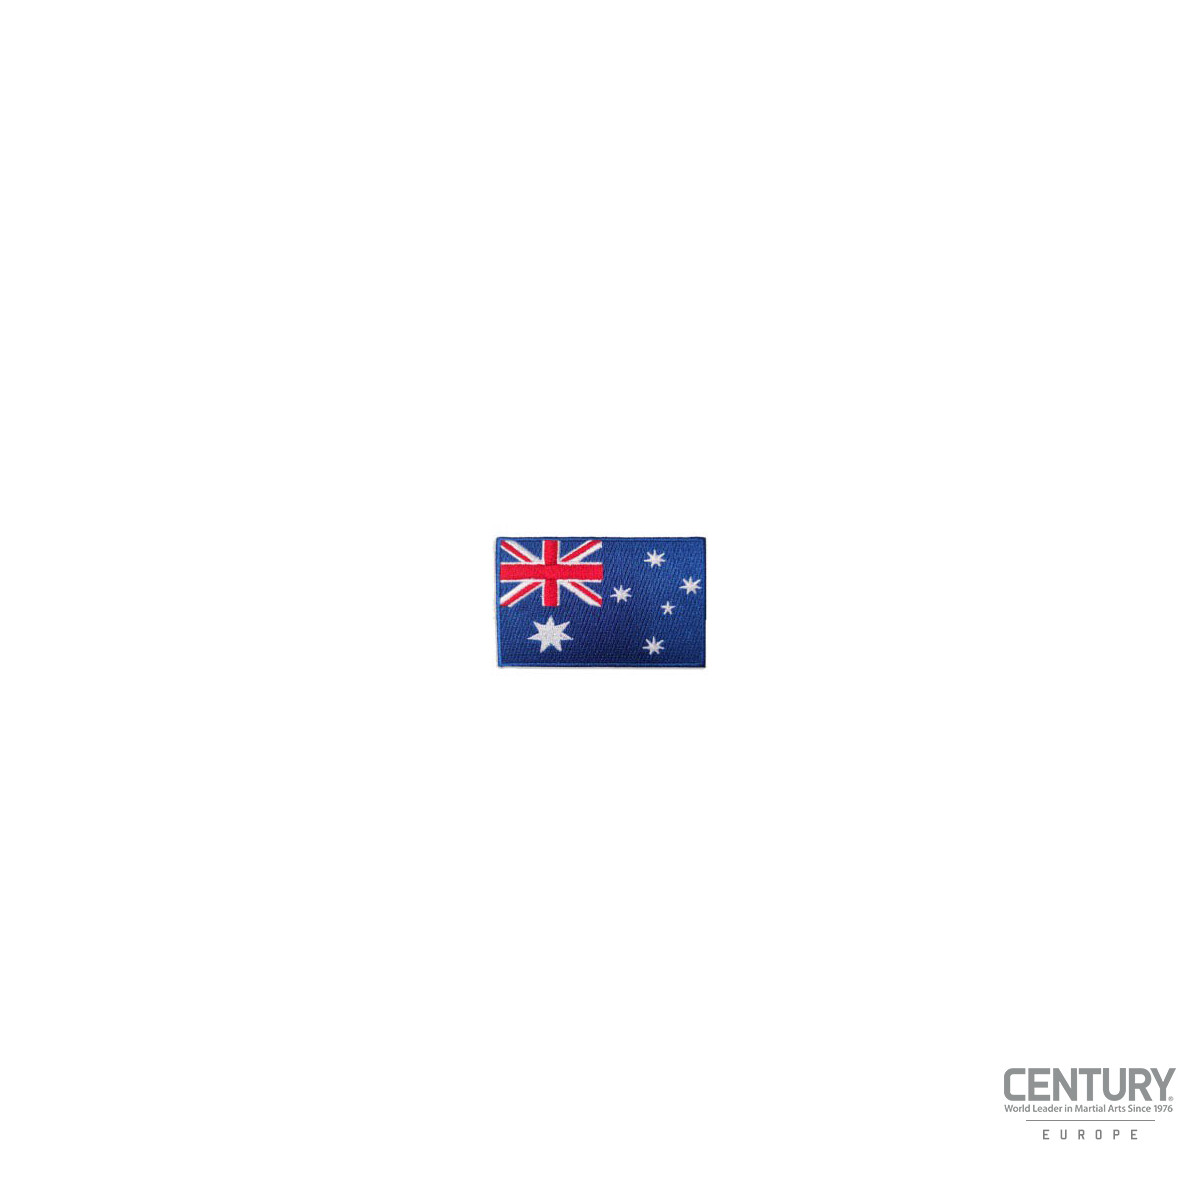 Landesflaggen Abzeichen Australien